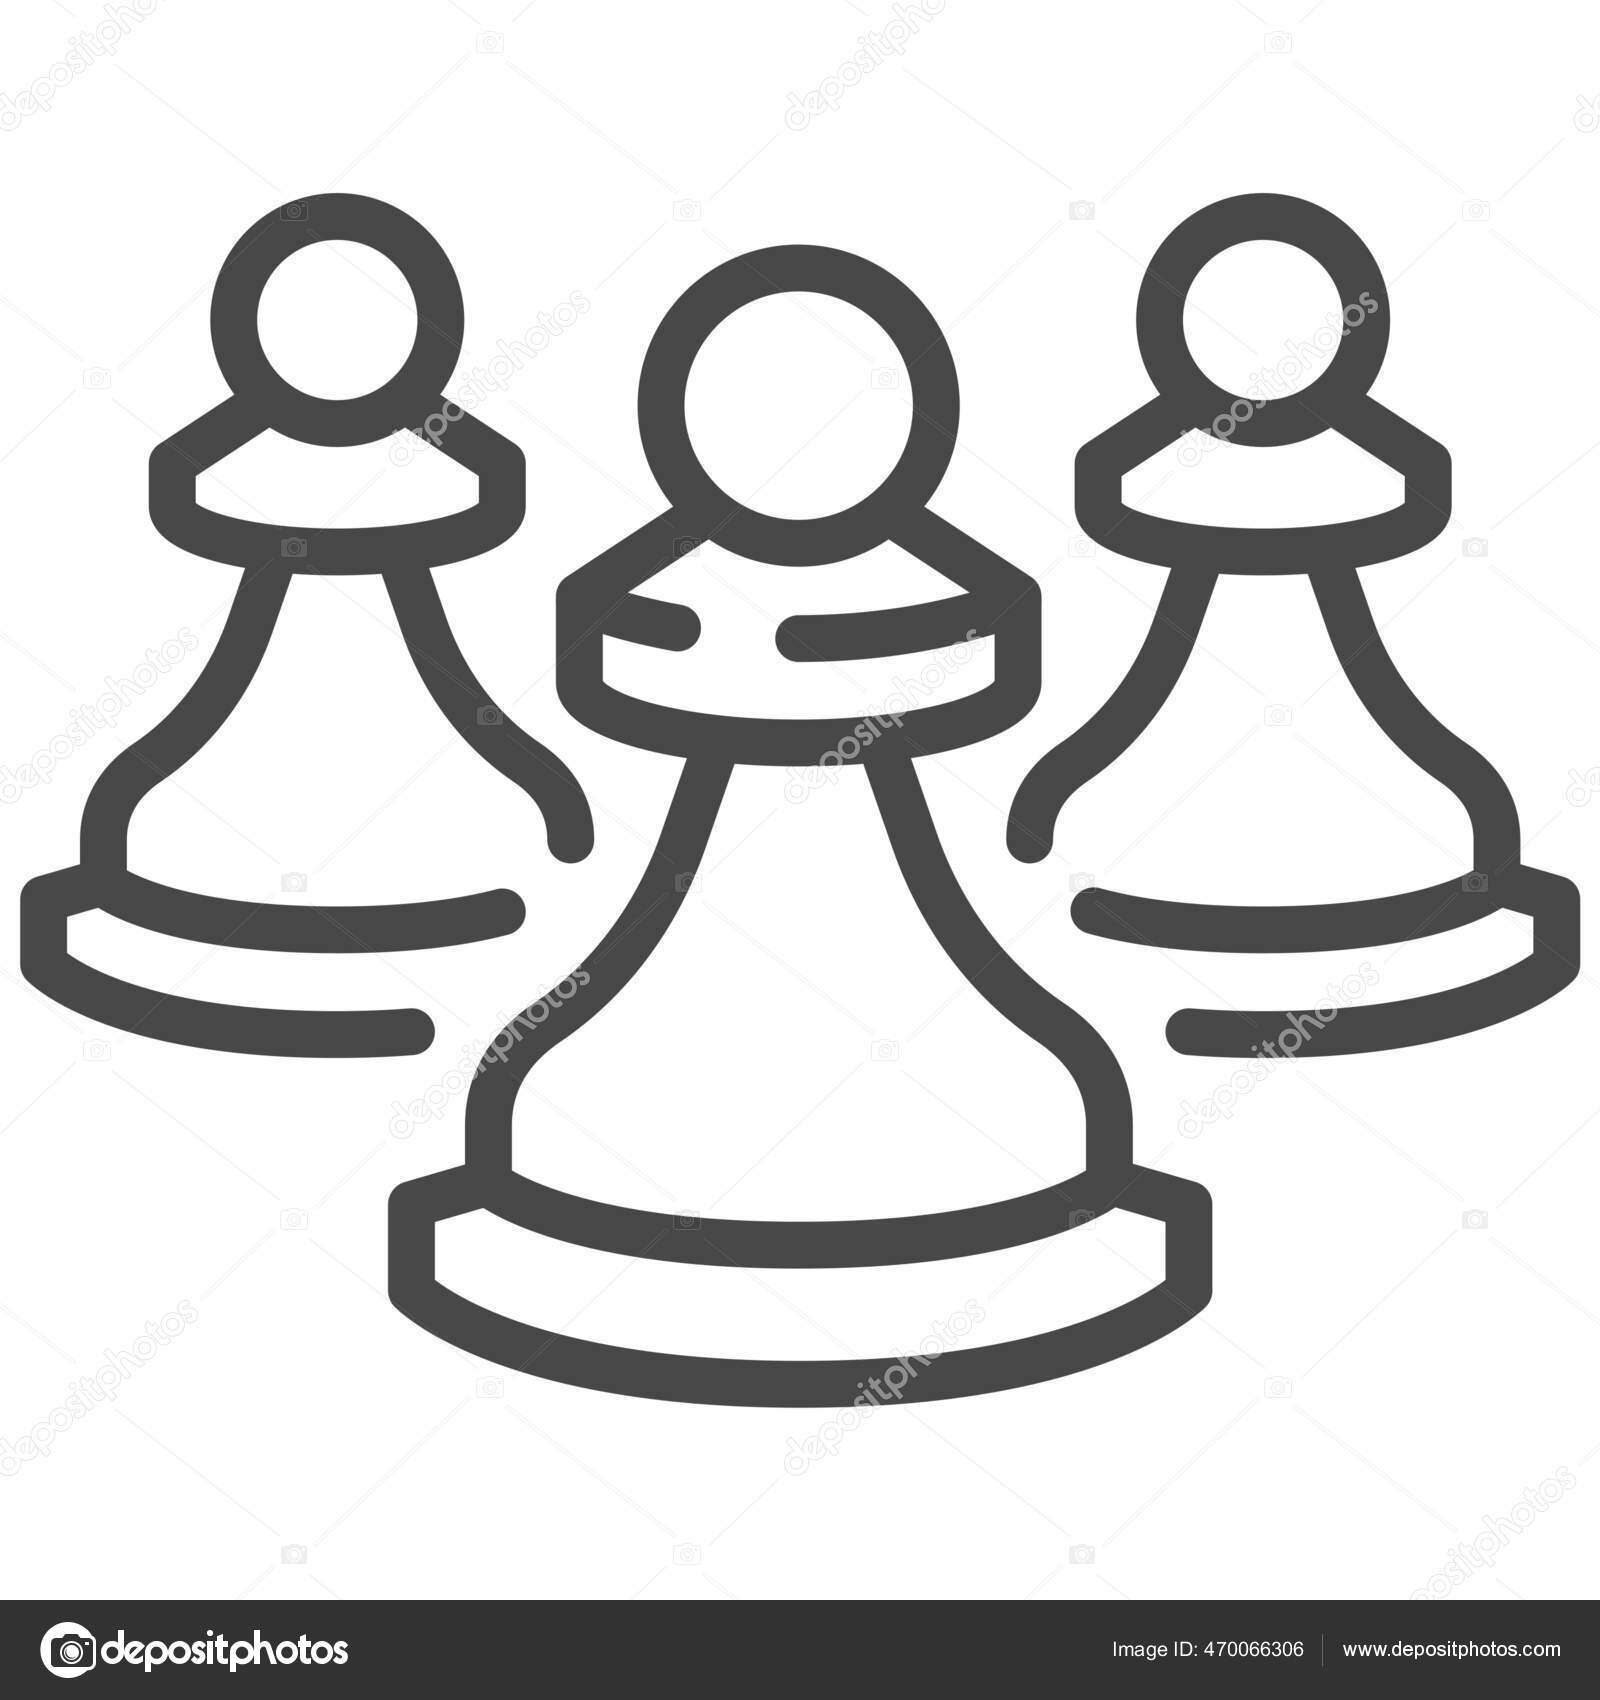 Jogo de tabuleiro de xadrez, conceito de competição, ícone de